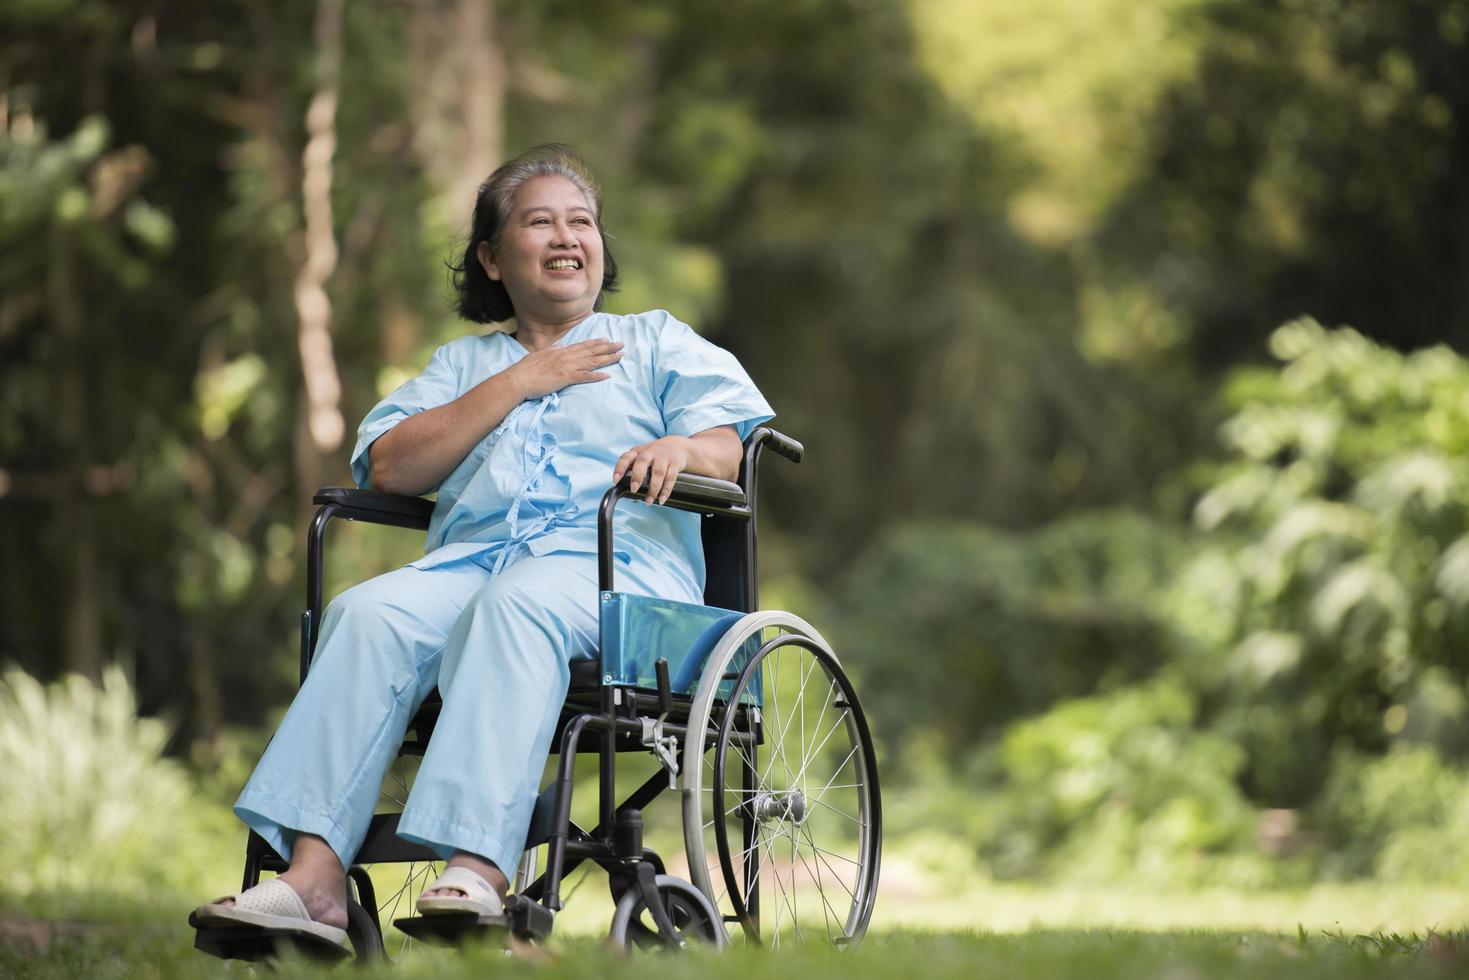 ensam äldre kvinna sitter ledsen på rullstolen i trädgården foto